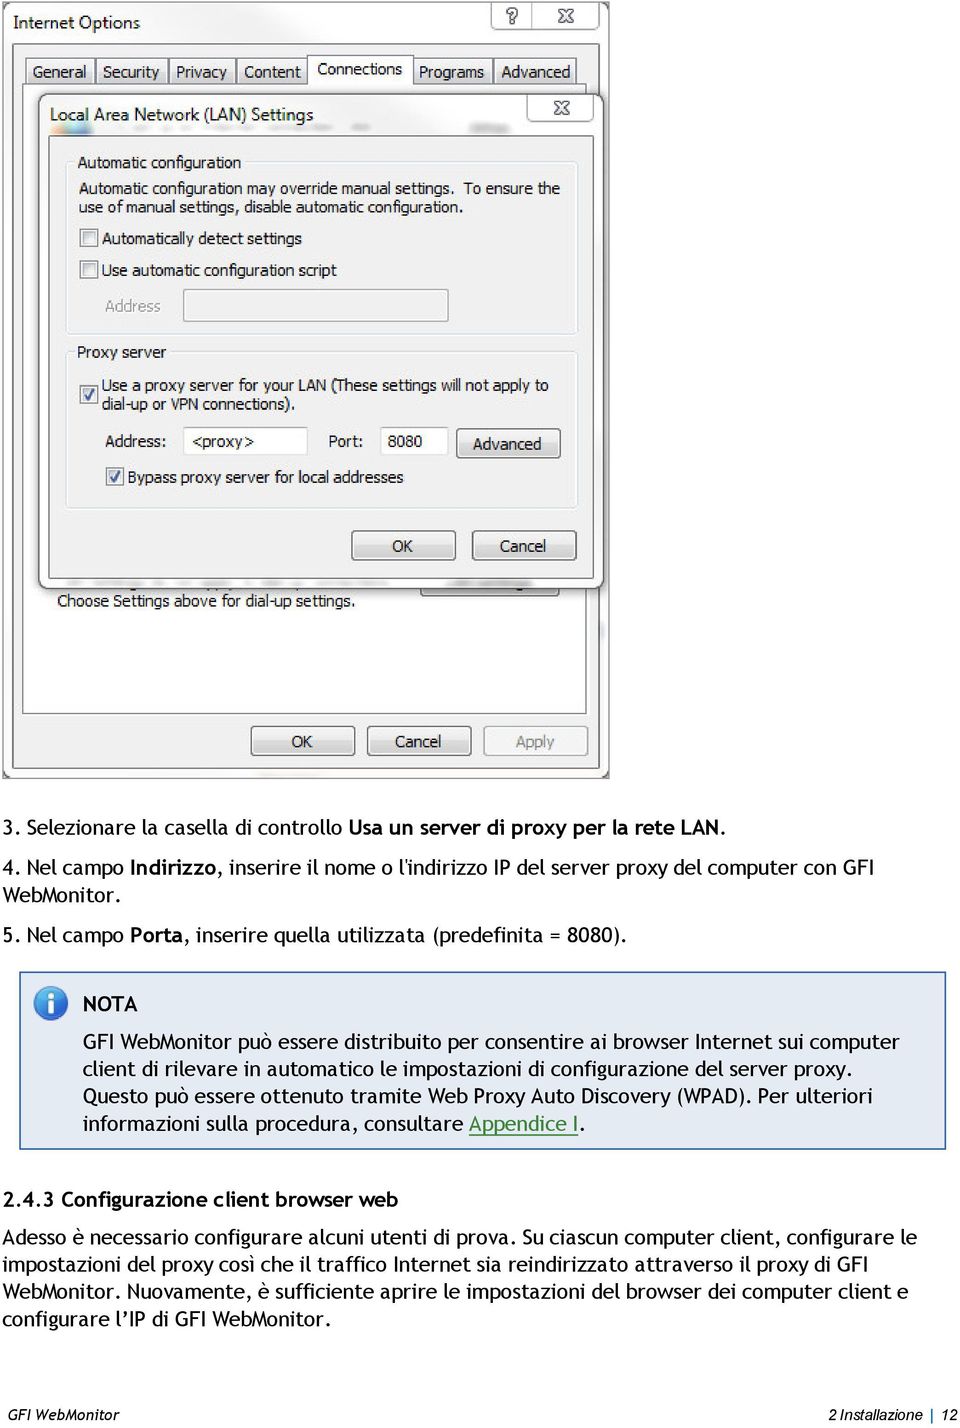 GFI WebMonitor può essere distribuito per consentire ai browser Internet sui computer client di rilevare in automatico le impostazioni di configurazione del server proxy.